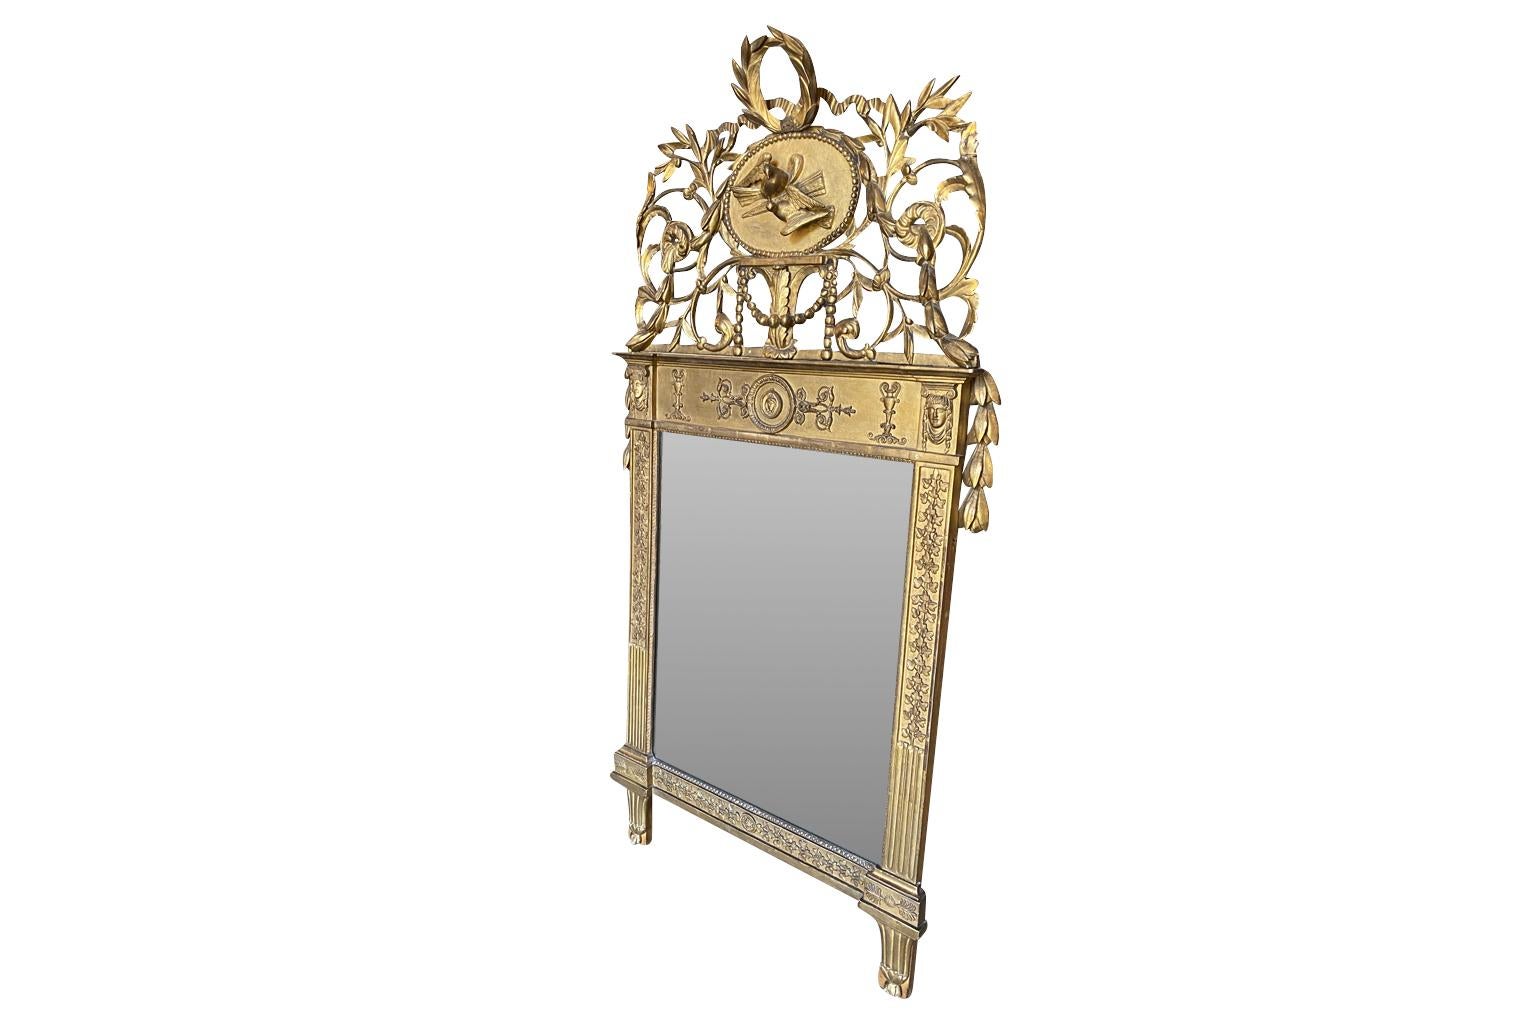 Un étonnant miroir de transition Louis XVI à Empire provenant de la région du Piémont en Italie.  Magnifiquement fabriqué en bois doré.  Le fronton est orné de colombes nuptiales et d'une couronne de lauriers et de guirlandes.  Le cadre est orné de